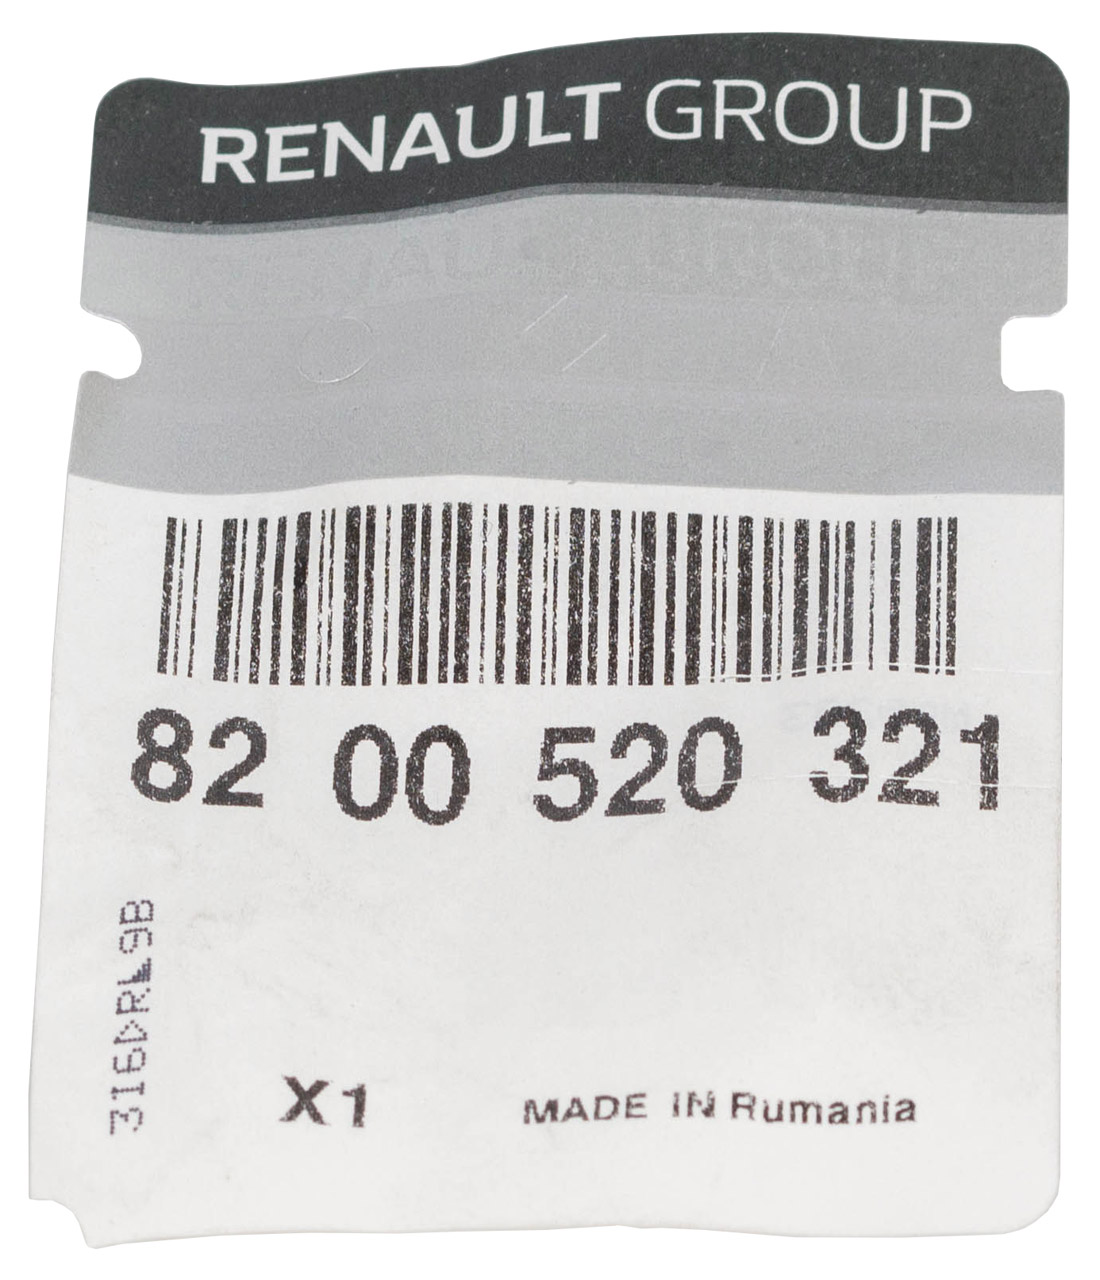 ORIGINAL Renault Federteller Federunterlage Twingo 2 Wind hinten unten 8200520321